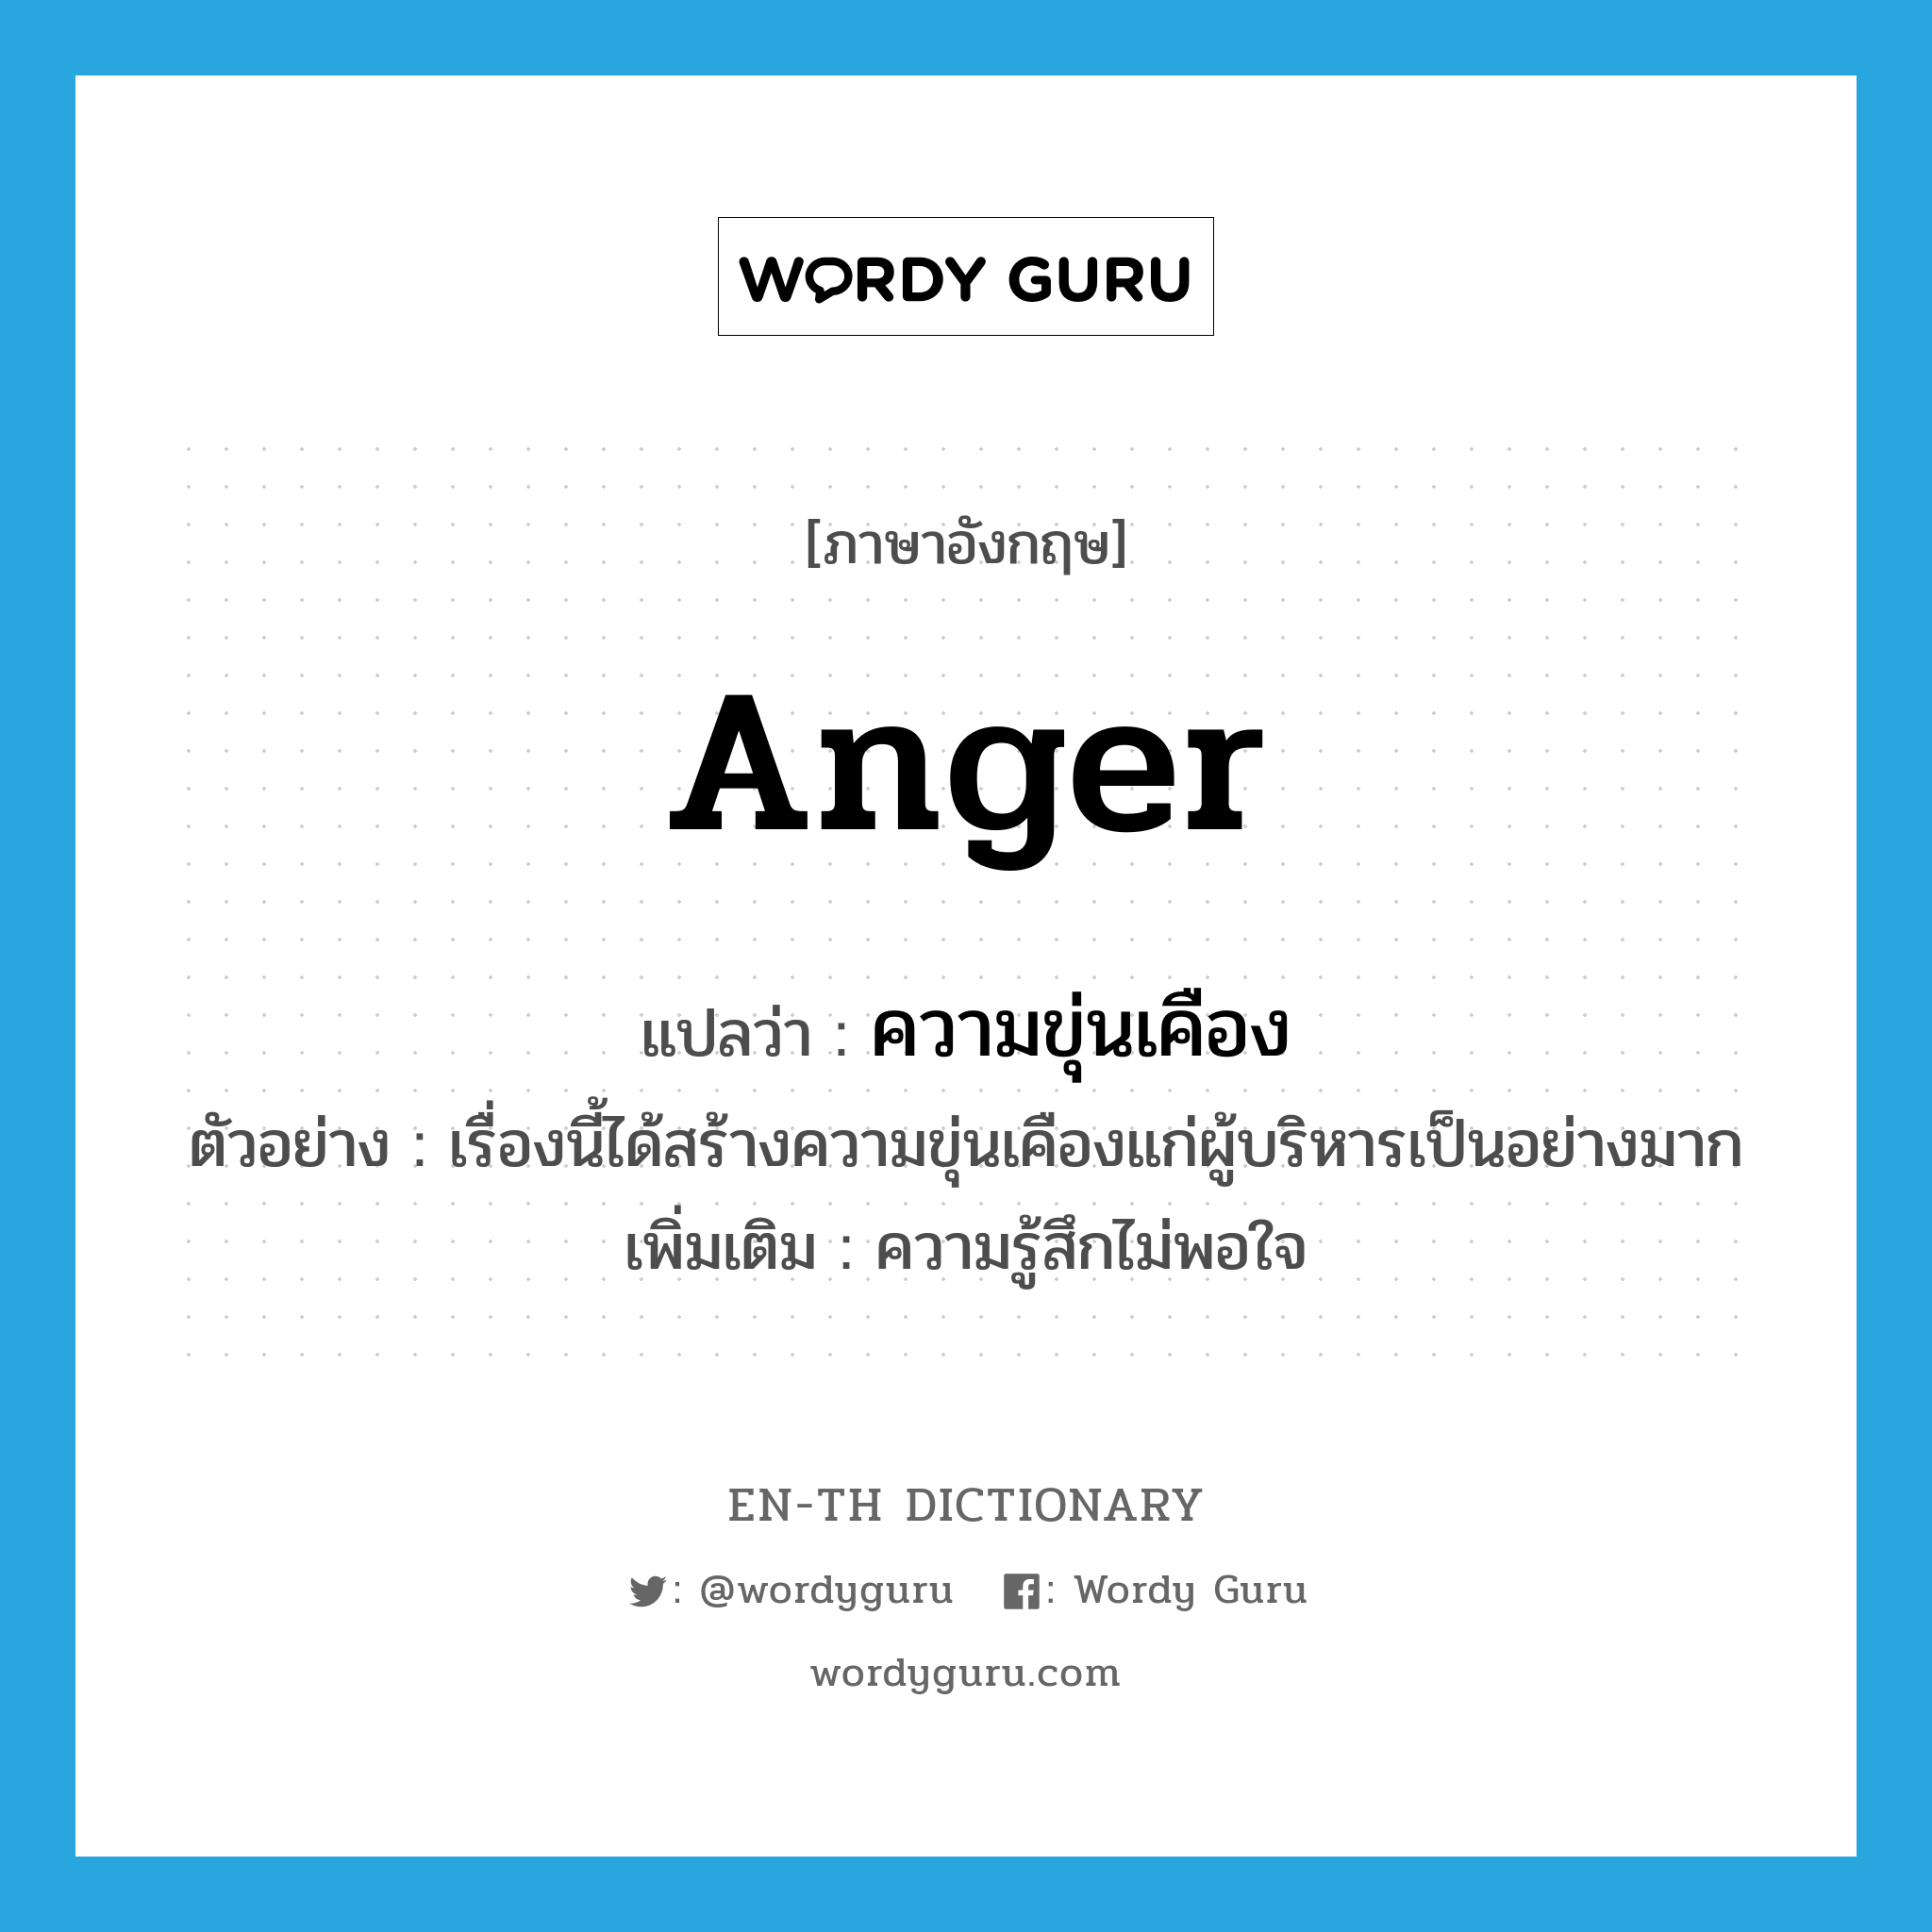 anger แปลว่า?, คำศัพท์ภาษาอังกฤษ anger แปลว่า ความขุ่นเคือง ประเภท N ตัวอย่าง เรื่องนี้ได้สร้างความขุ่นเคืองแก่ผู้บริหารเป็นอย่างมาก เพิ่มเติม ความรู้สึกไม่พอใจ หมวด N